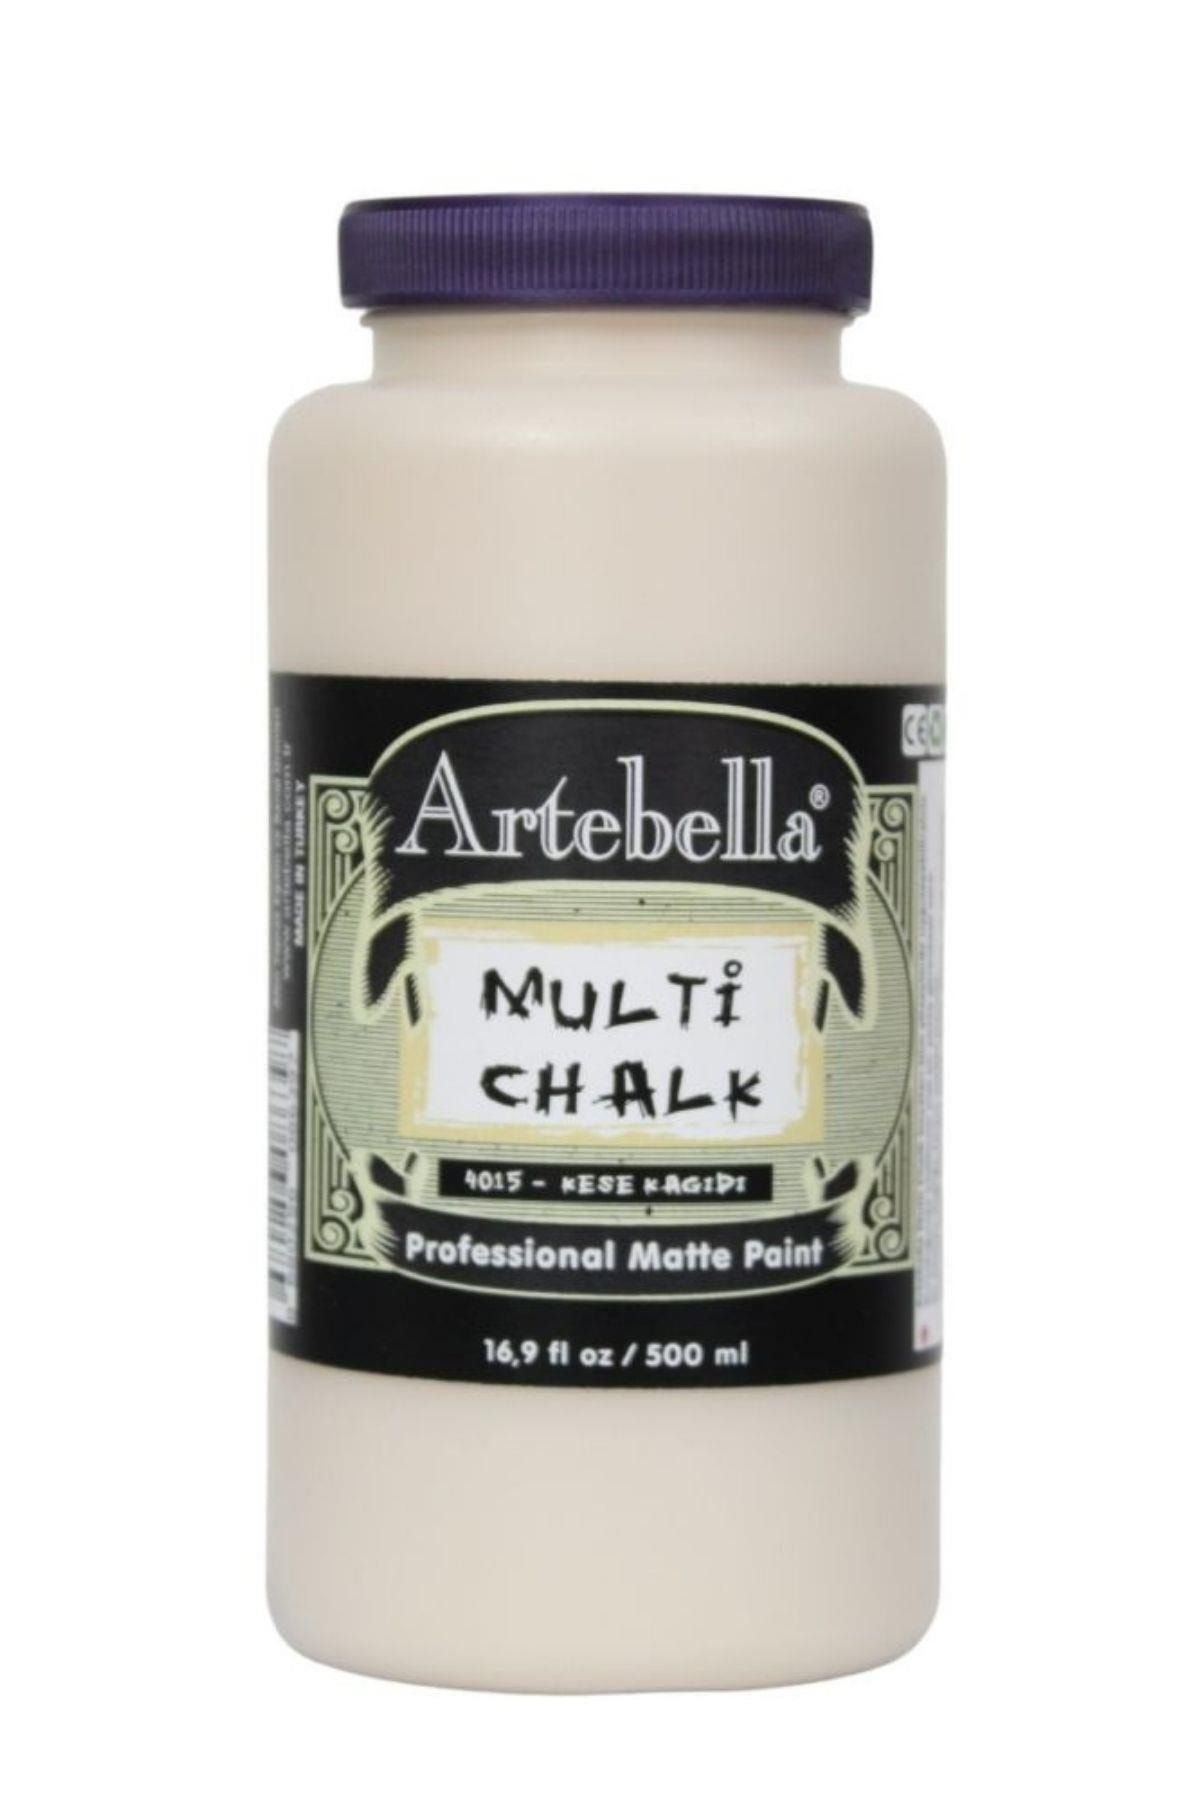 Artebella Multi Decor Chalked Boya 4015 Kese Kağıdı 500 ml